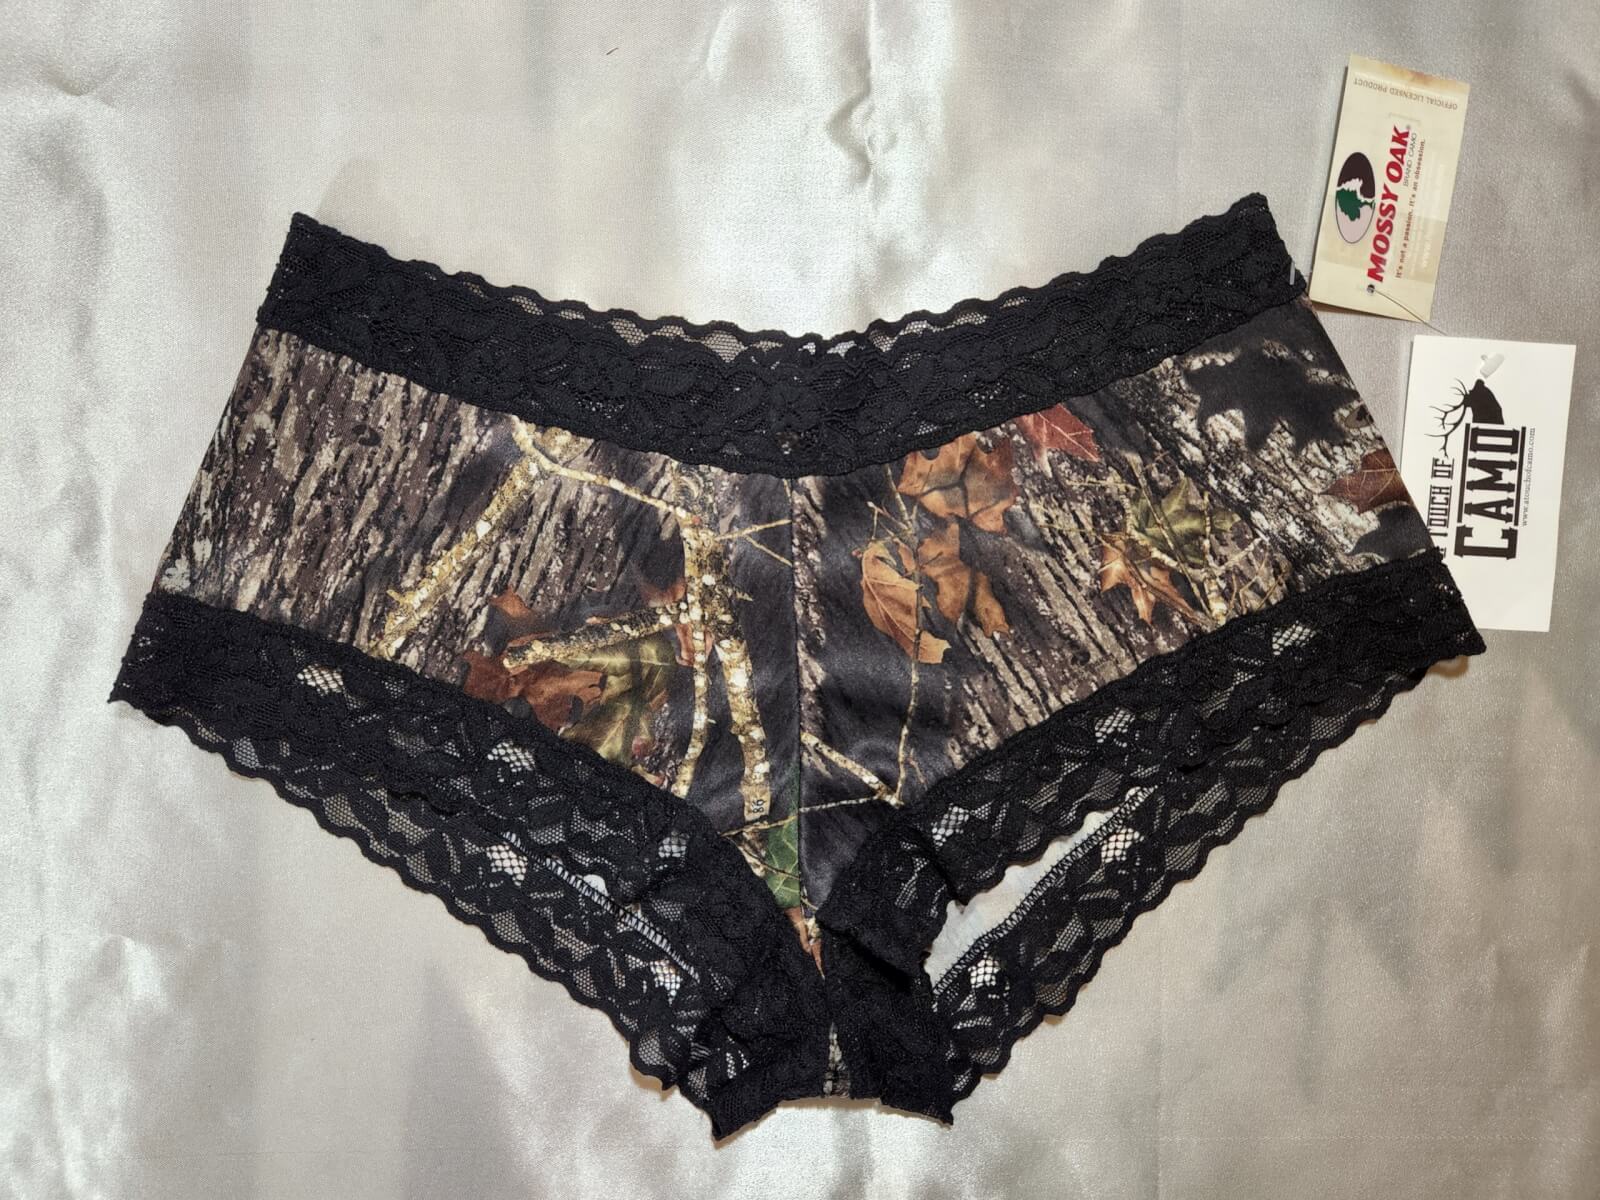 Lace Trimmed Boy Short Panty in Mossy Oak Camo Size M